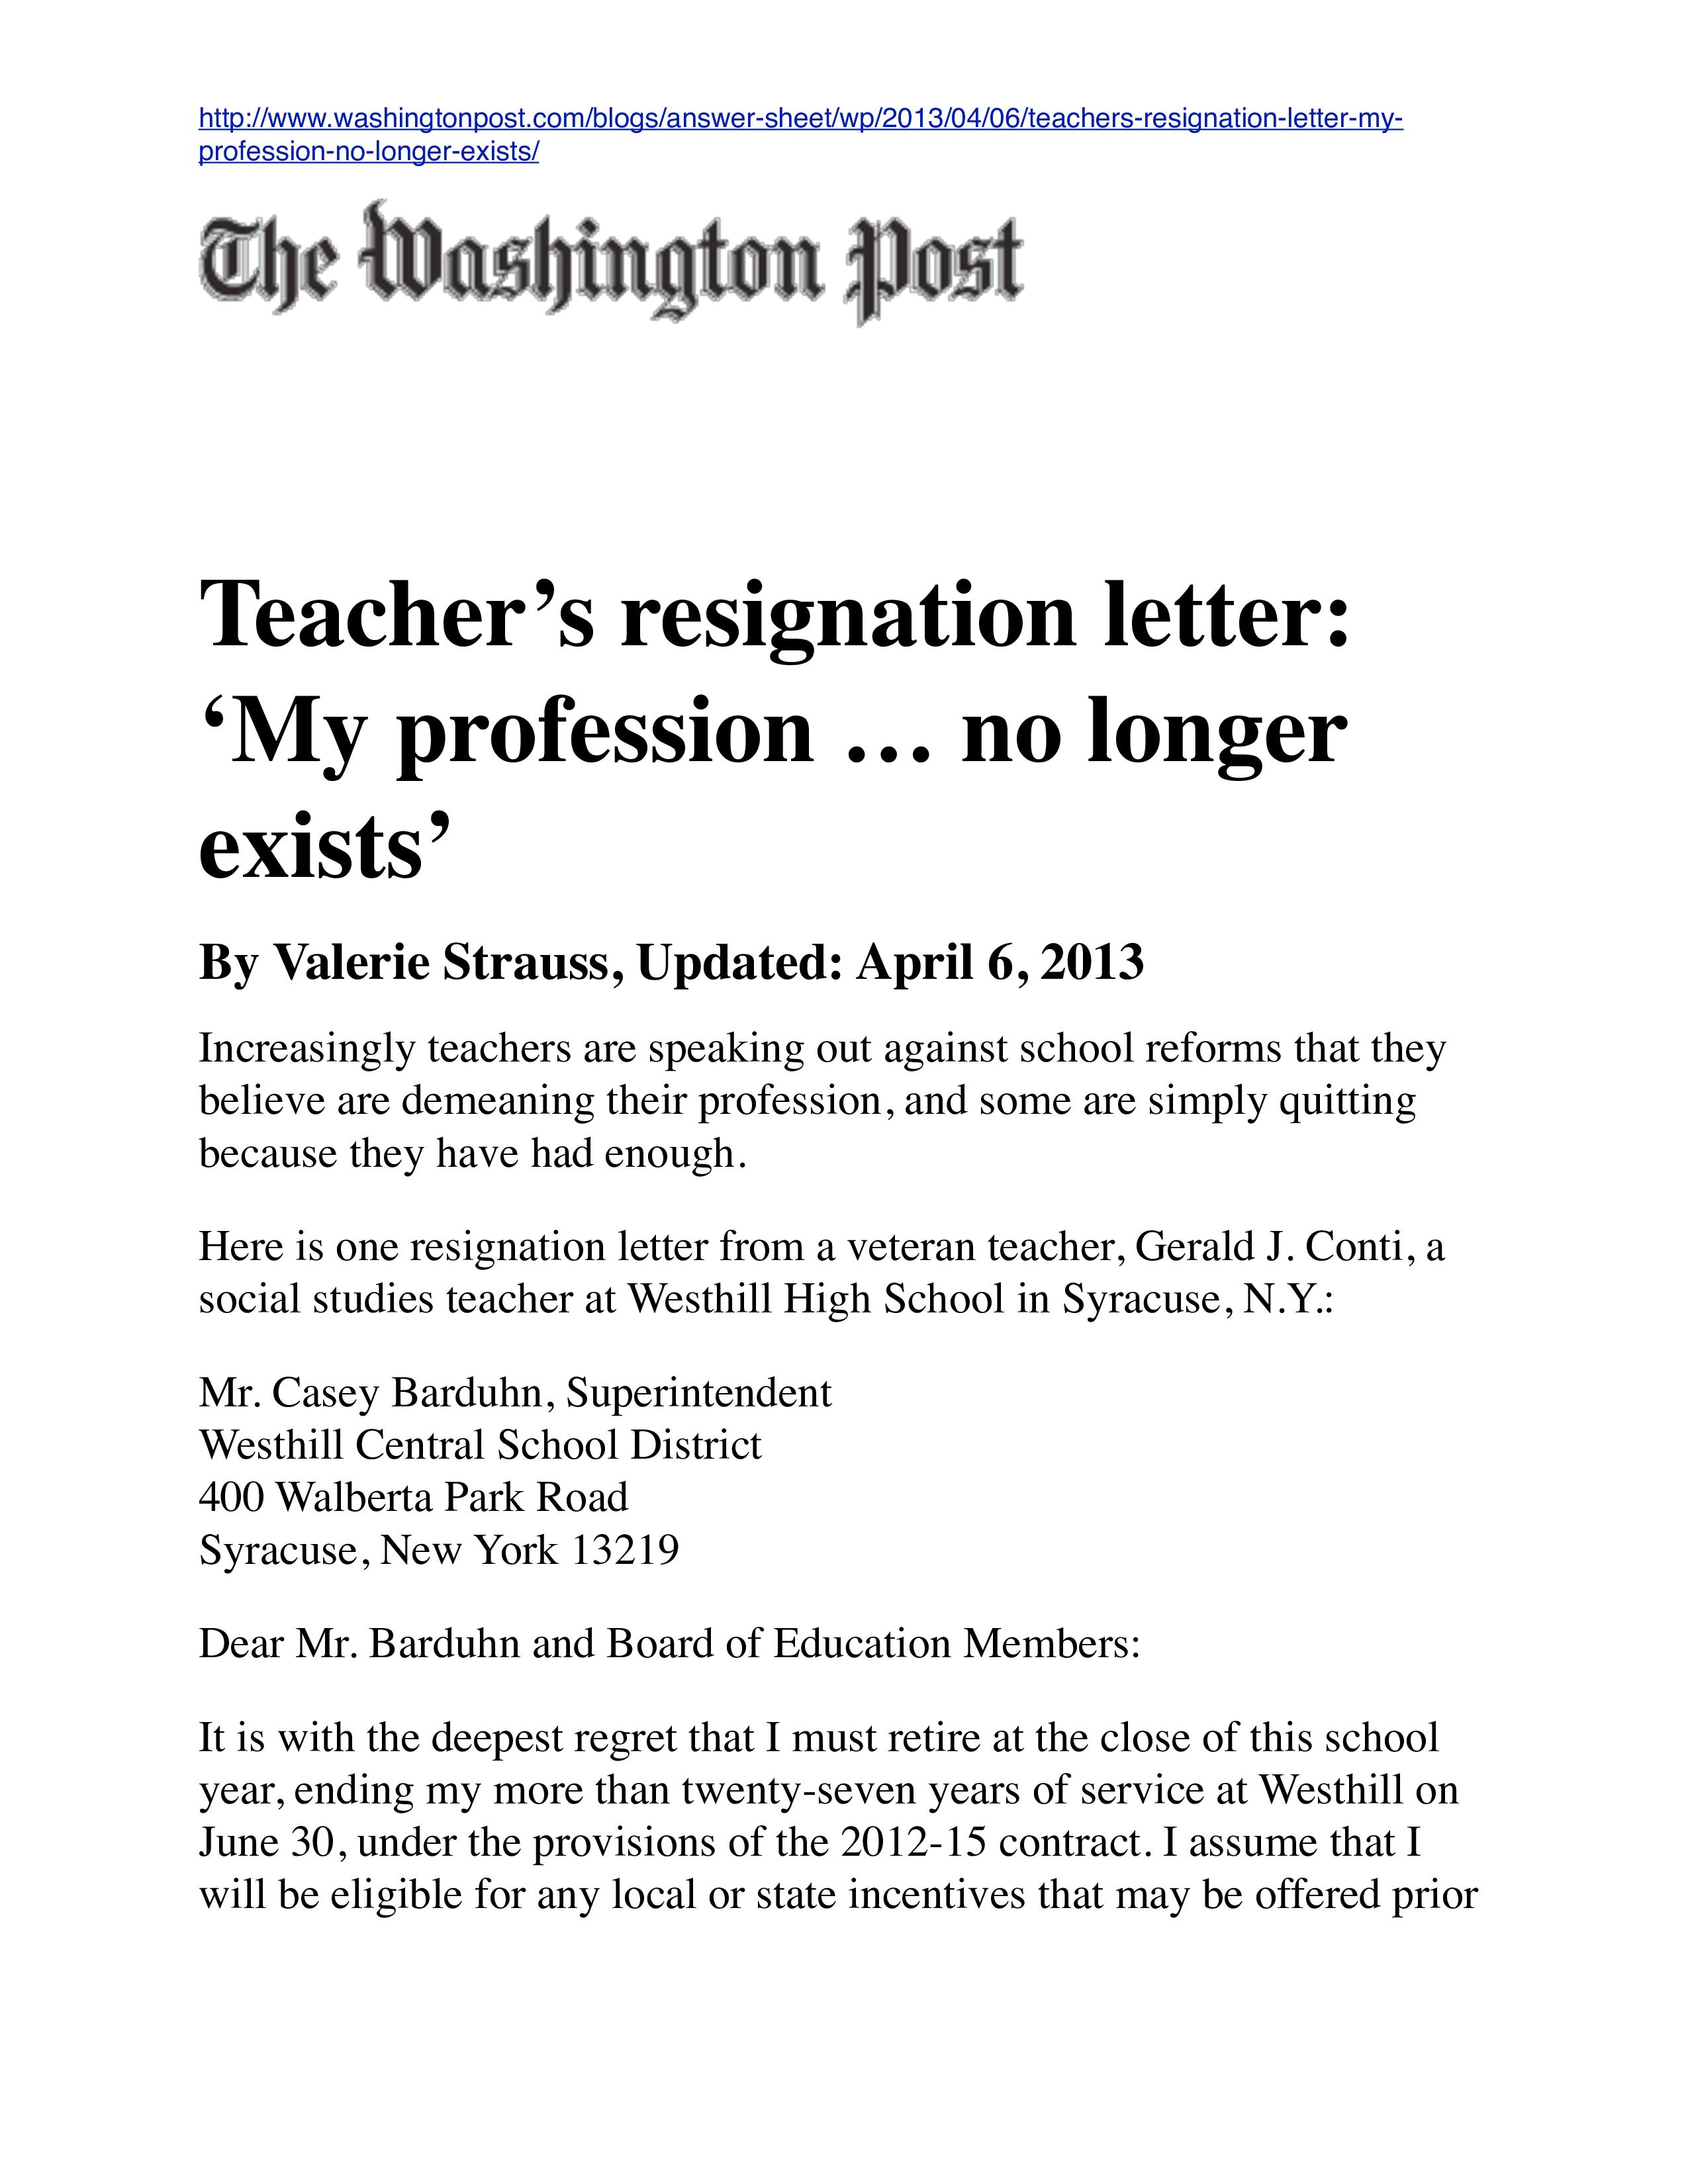 Sample Resignation Letter For Teacher from www.allbusinesstemplates.com